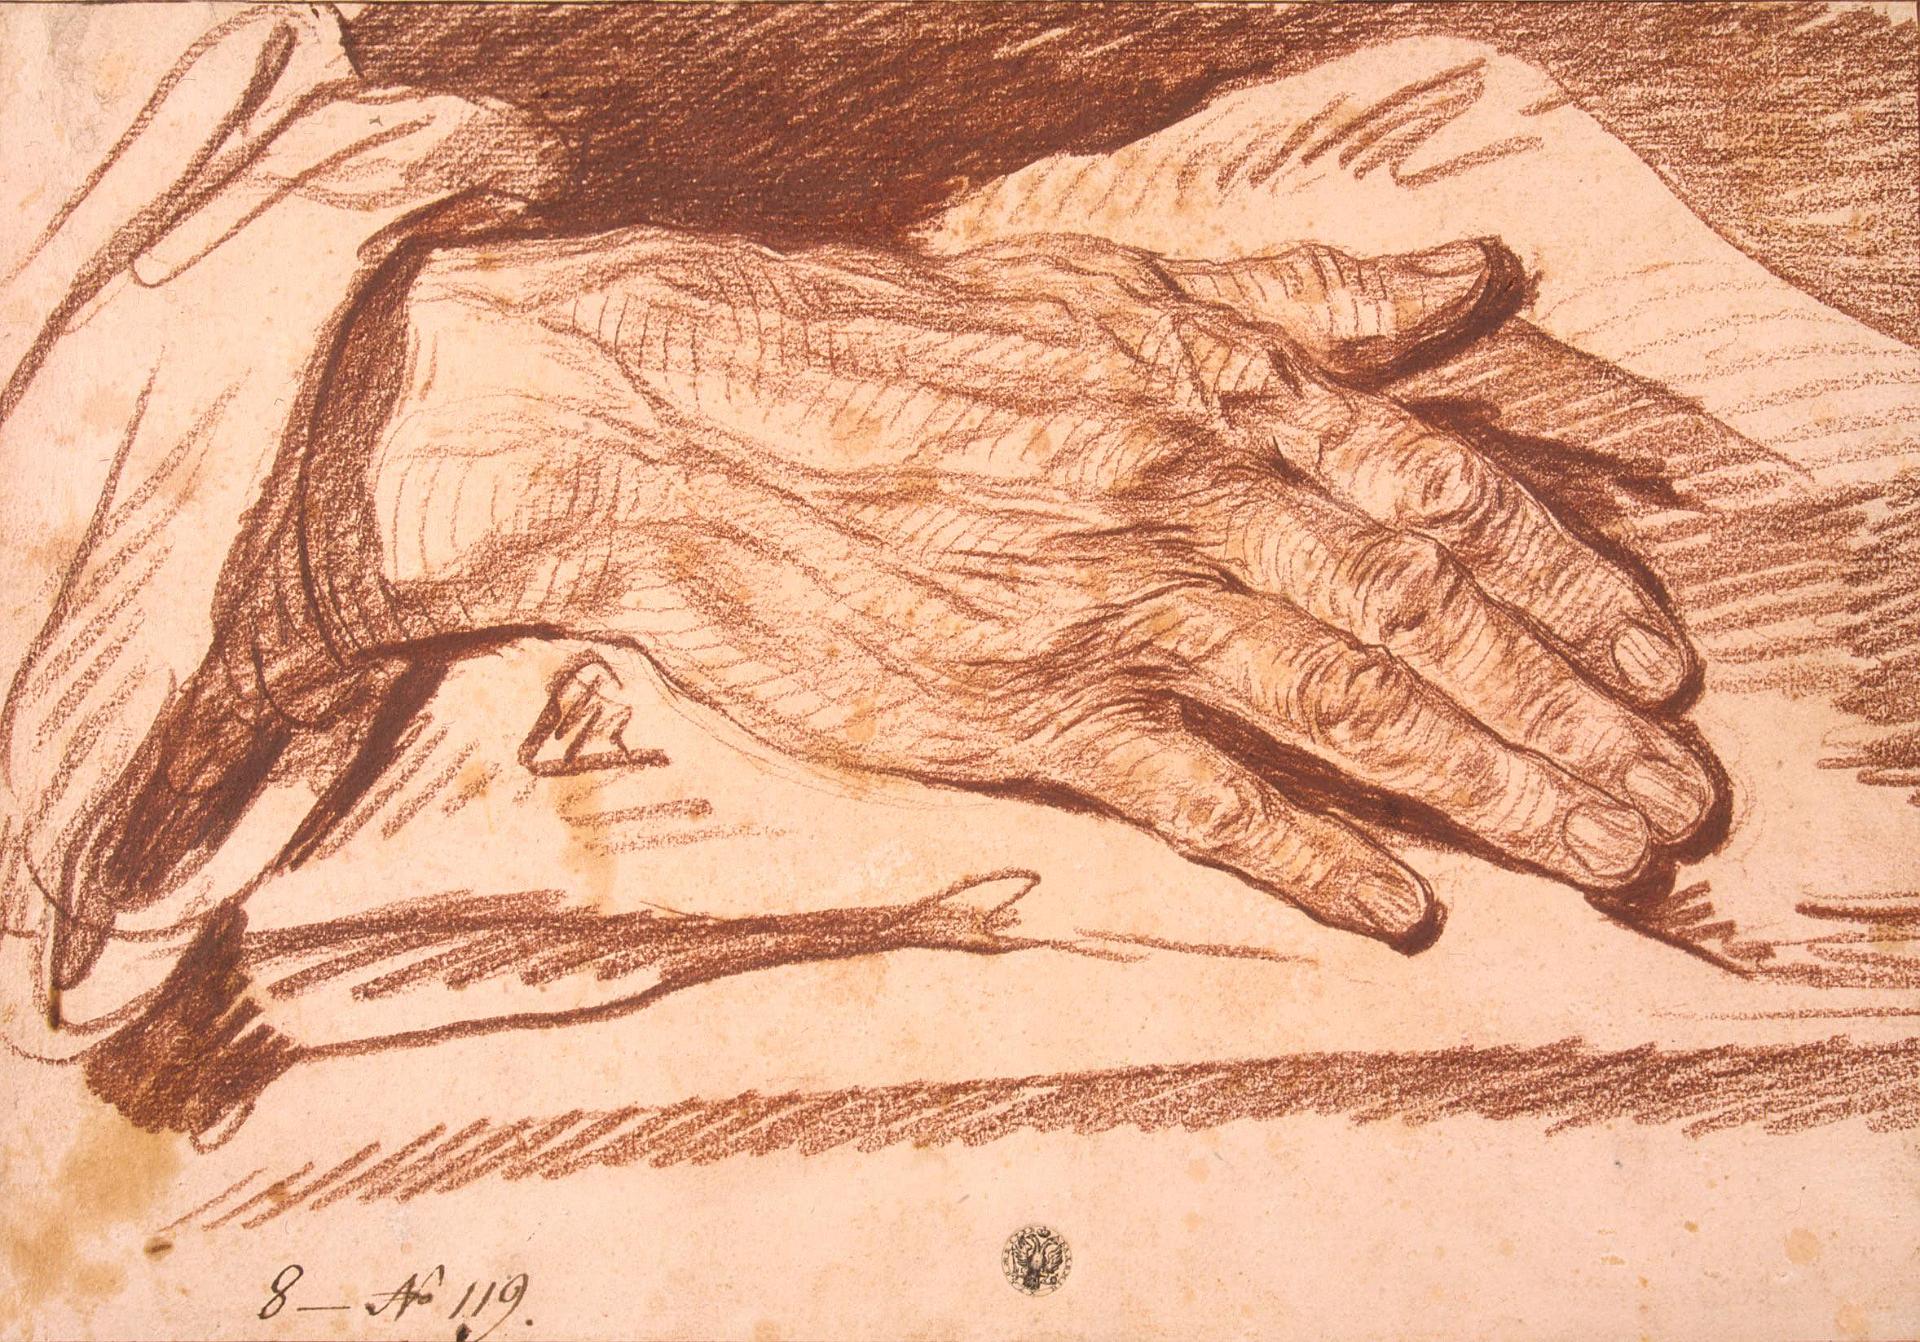 Жан-Батист Грёз. "Этюд кисти мужской руки, ладонью вниз". Около 1760. Эрмитаж, Санкт-Петербург.